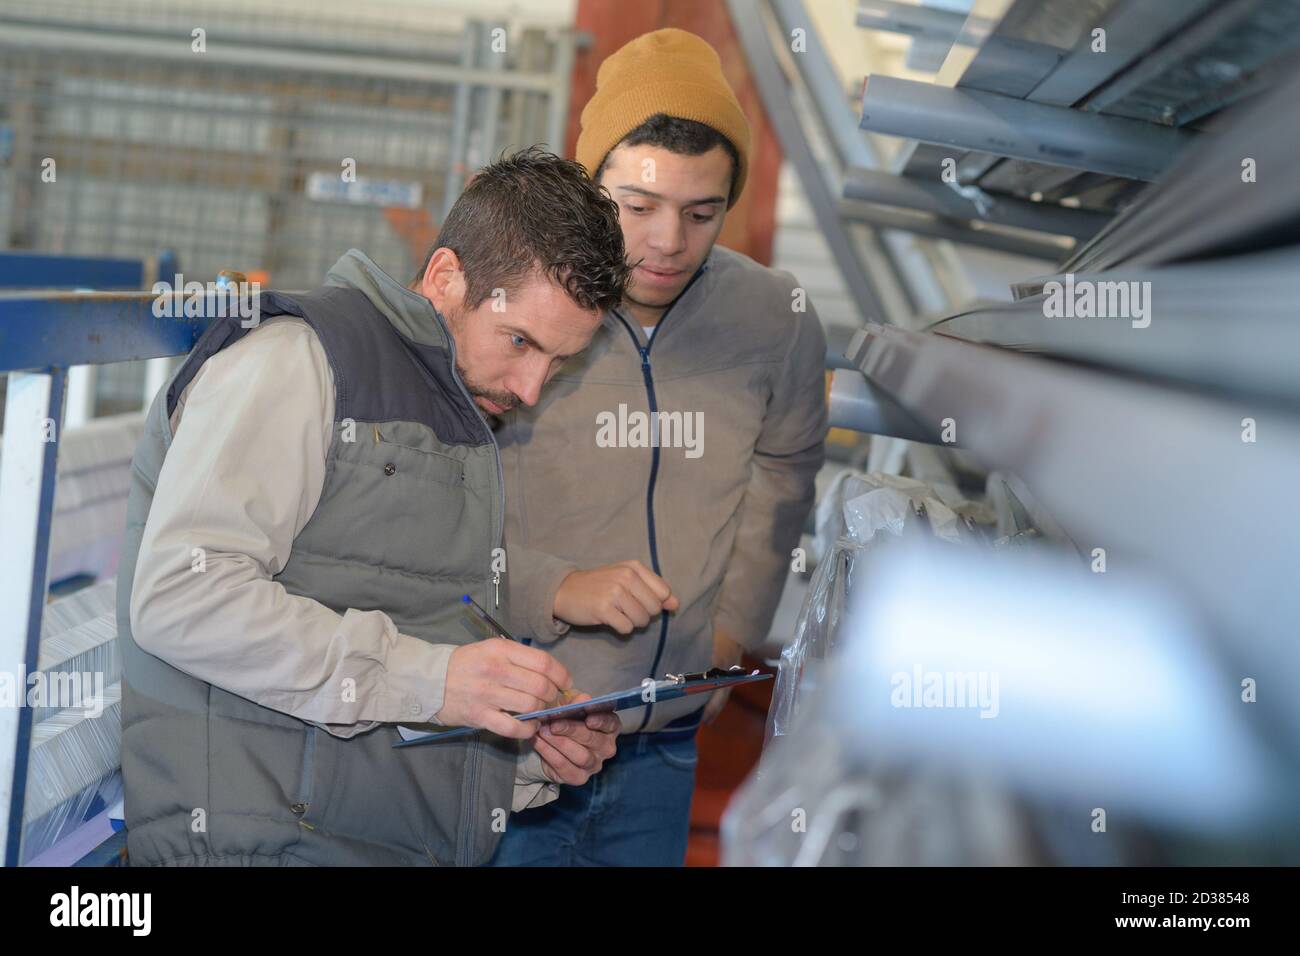 men working in newspaper factory Stock Photo